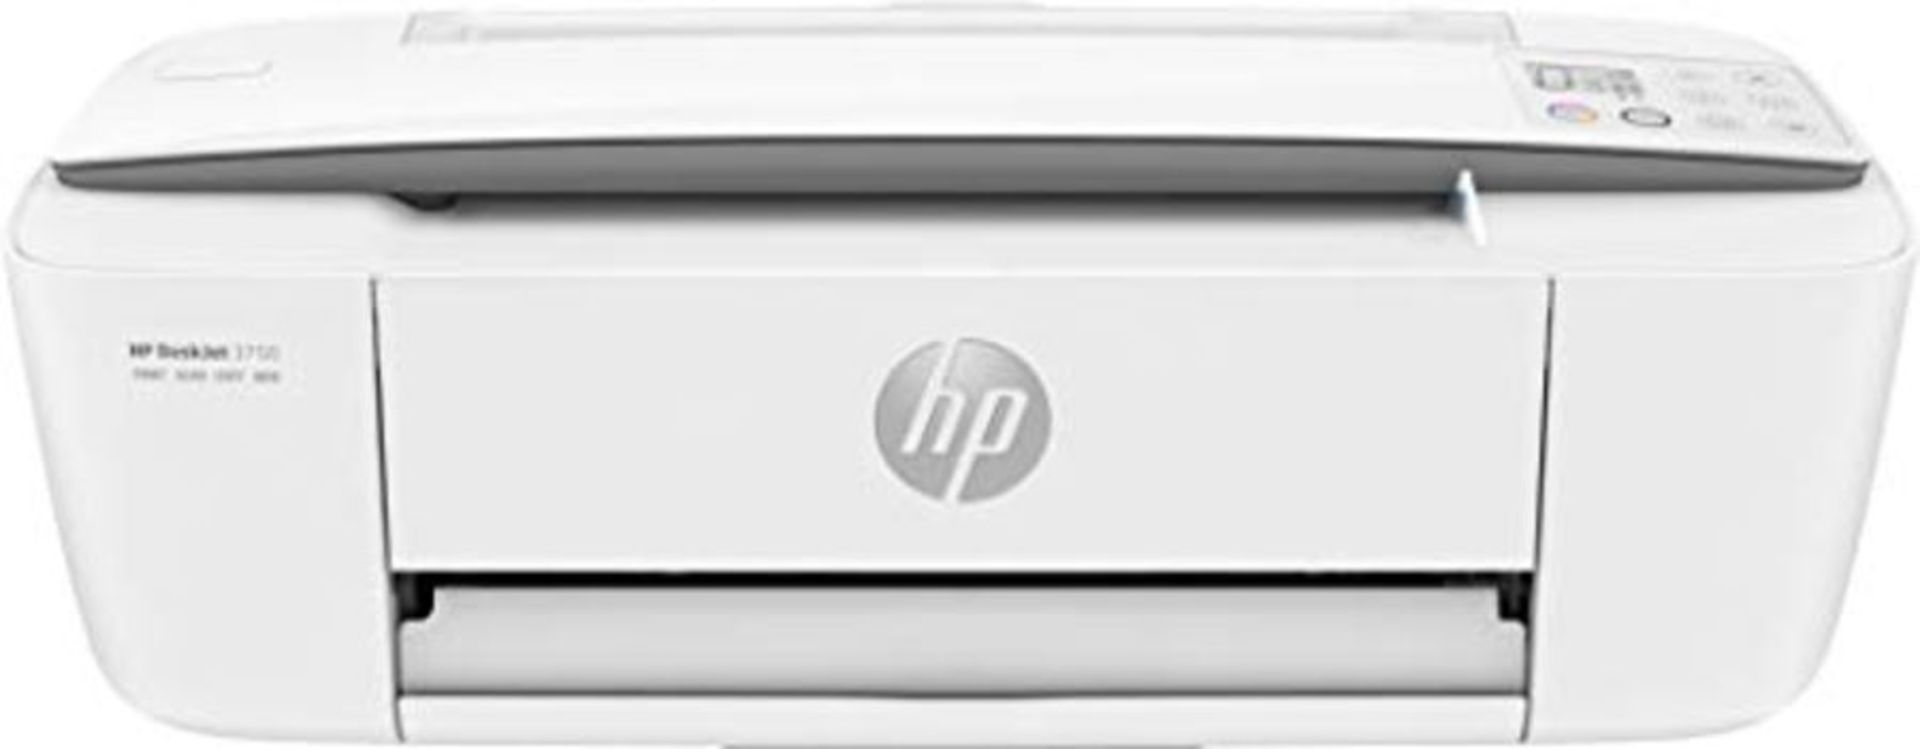 RRP £77.00 HP DeskJet 3750 Multifunktionsdrucker (Drucken, Scannen, Kopieren, WLAN, Airprint, mit